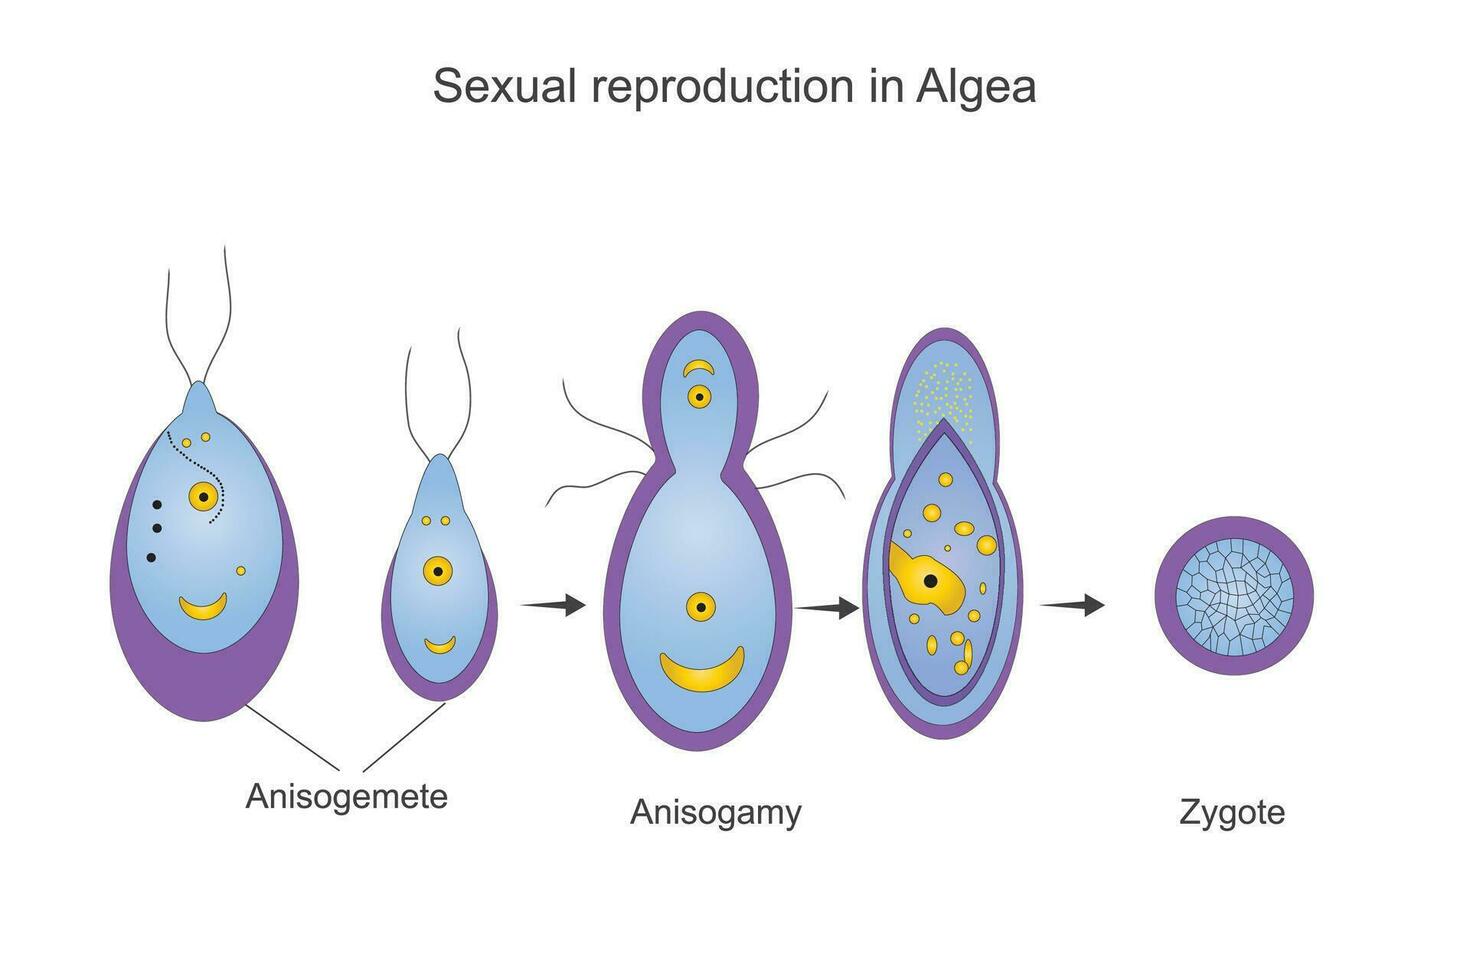 sexual reprodução em algas, anisogamia processo, anisogameta, zigoto, botânica ilustração vetor